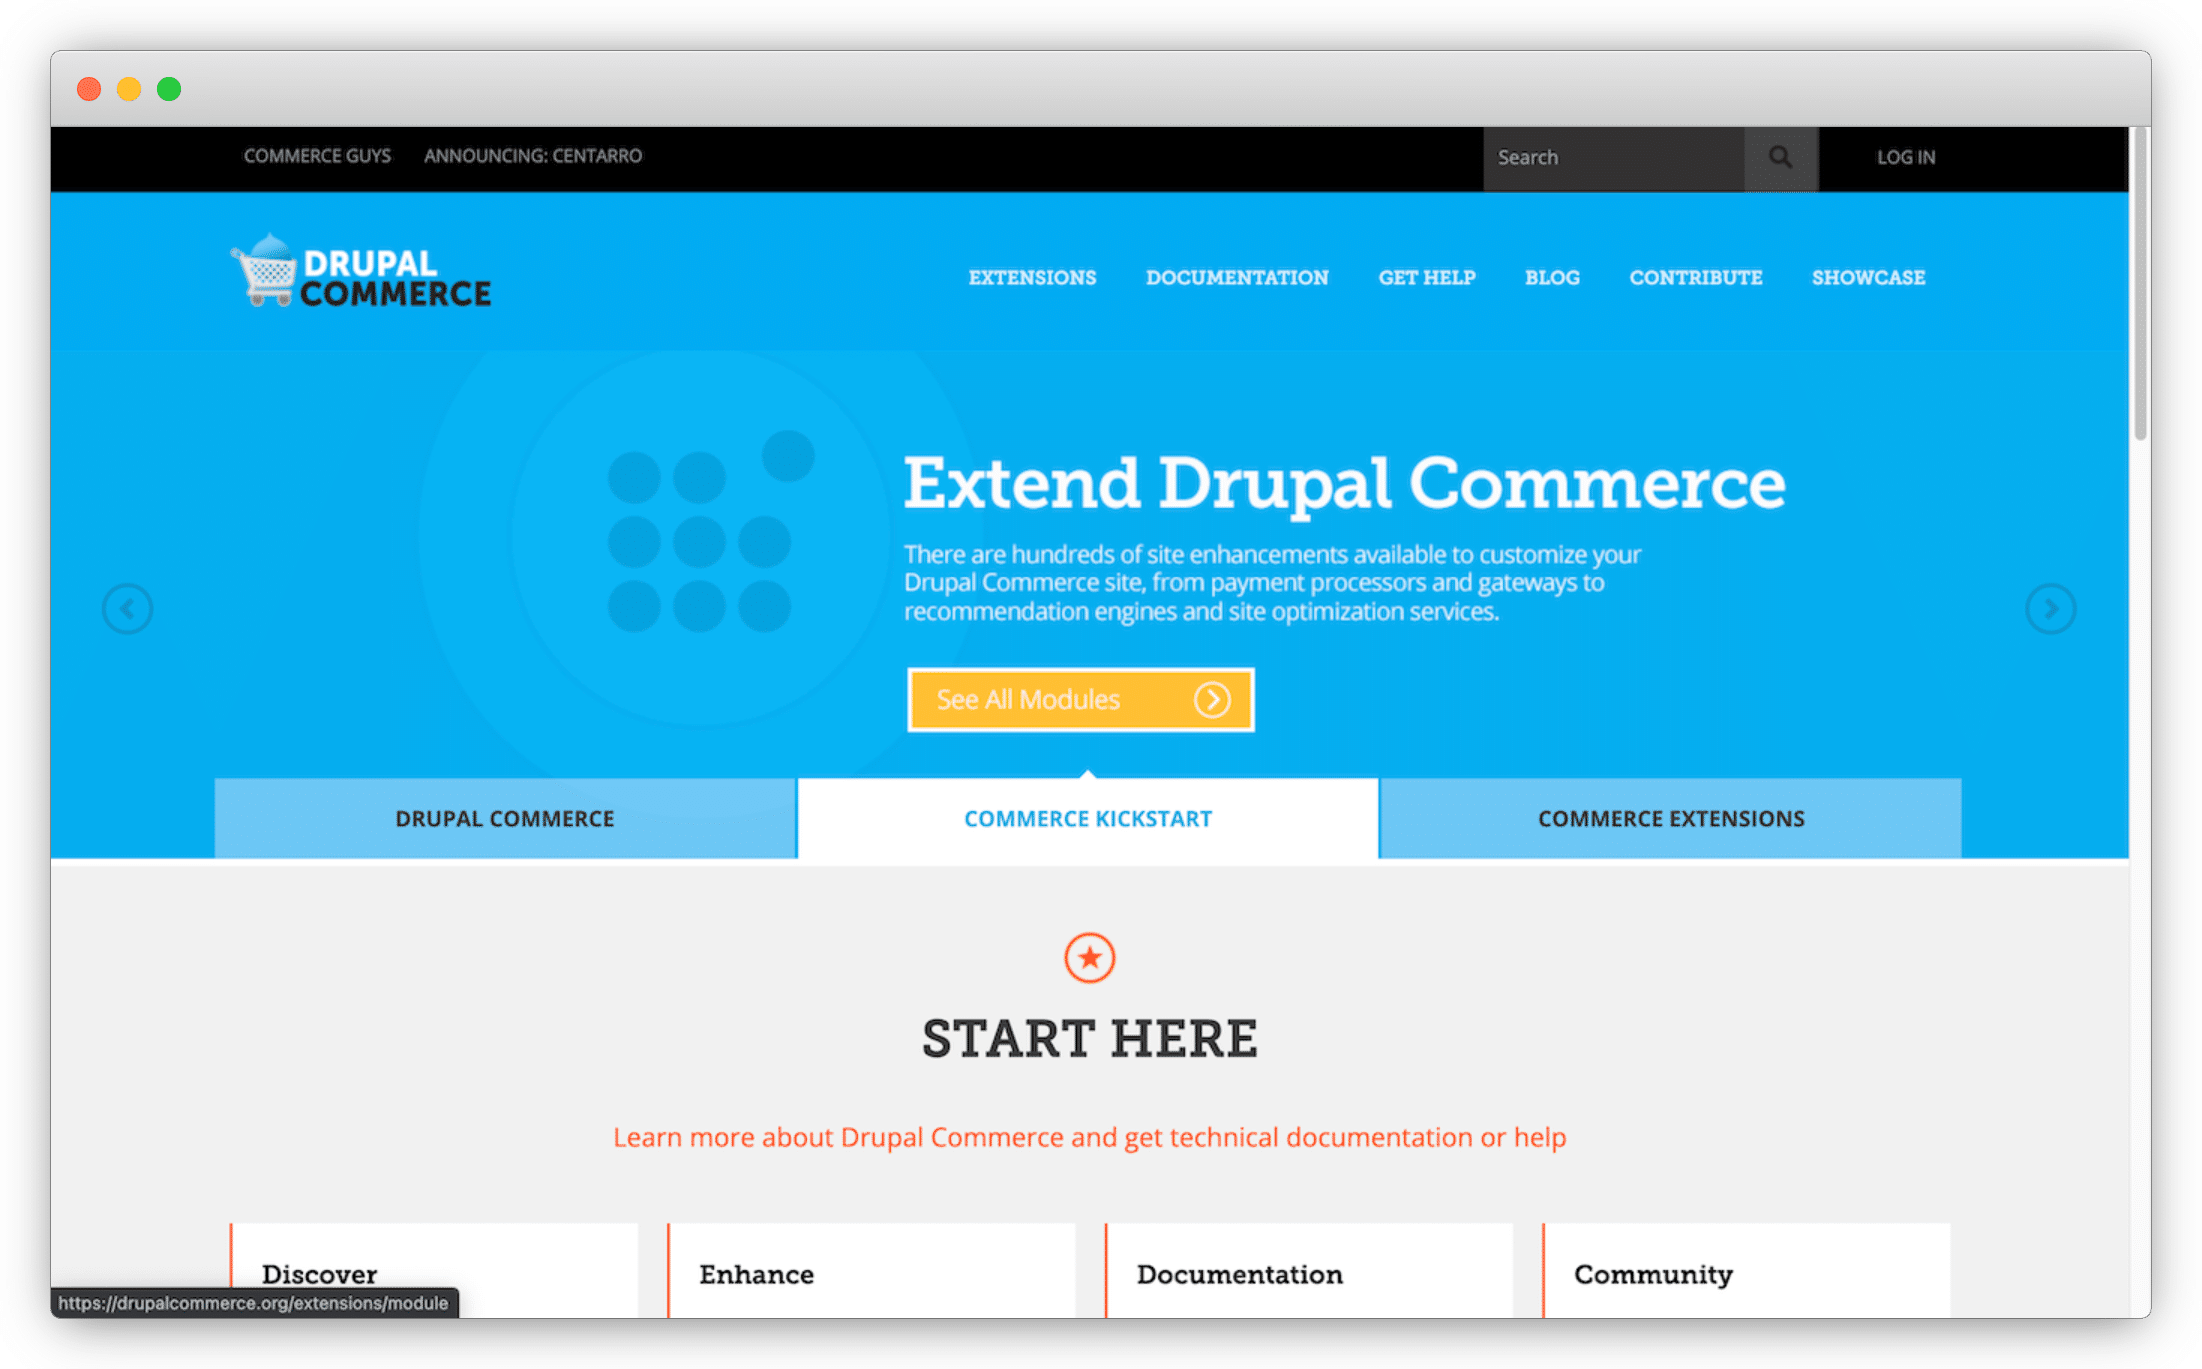 drupal-commerce-b2b-ecommerce-platform-open-source